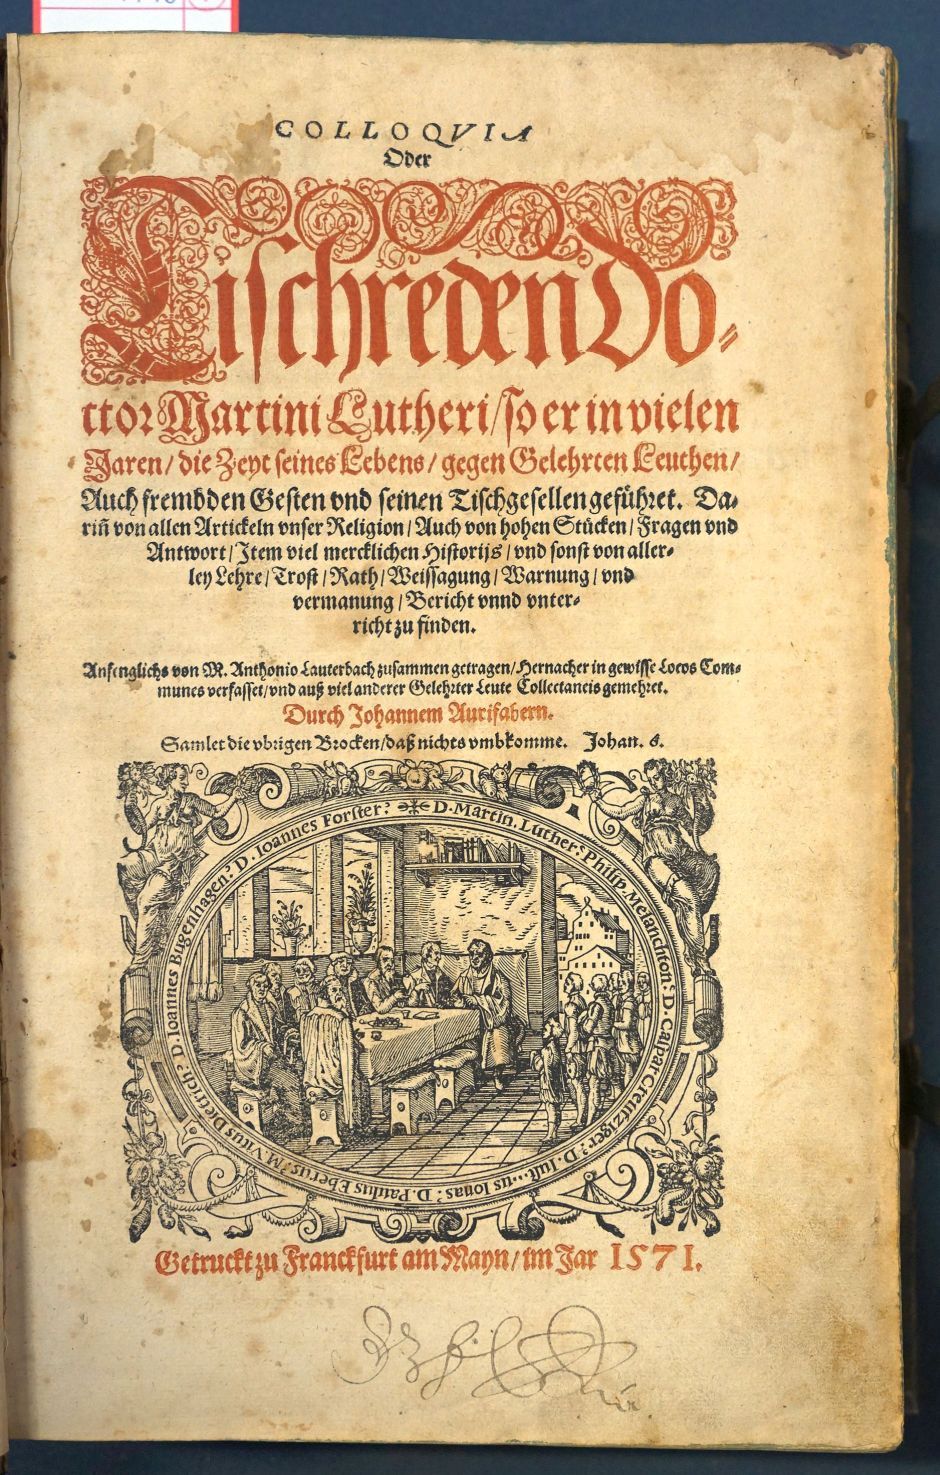 Lot 1140, Auction  115, Luther, Martin, Colloquia oder Tischreden